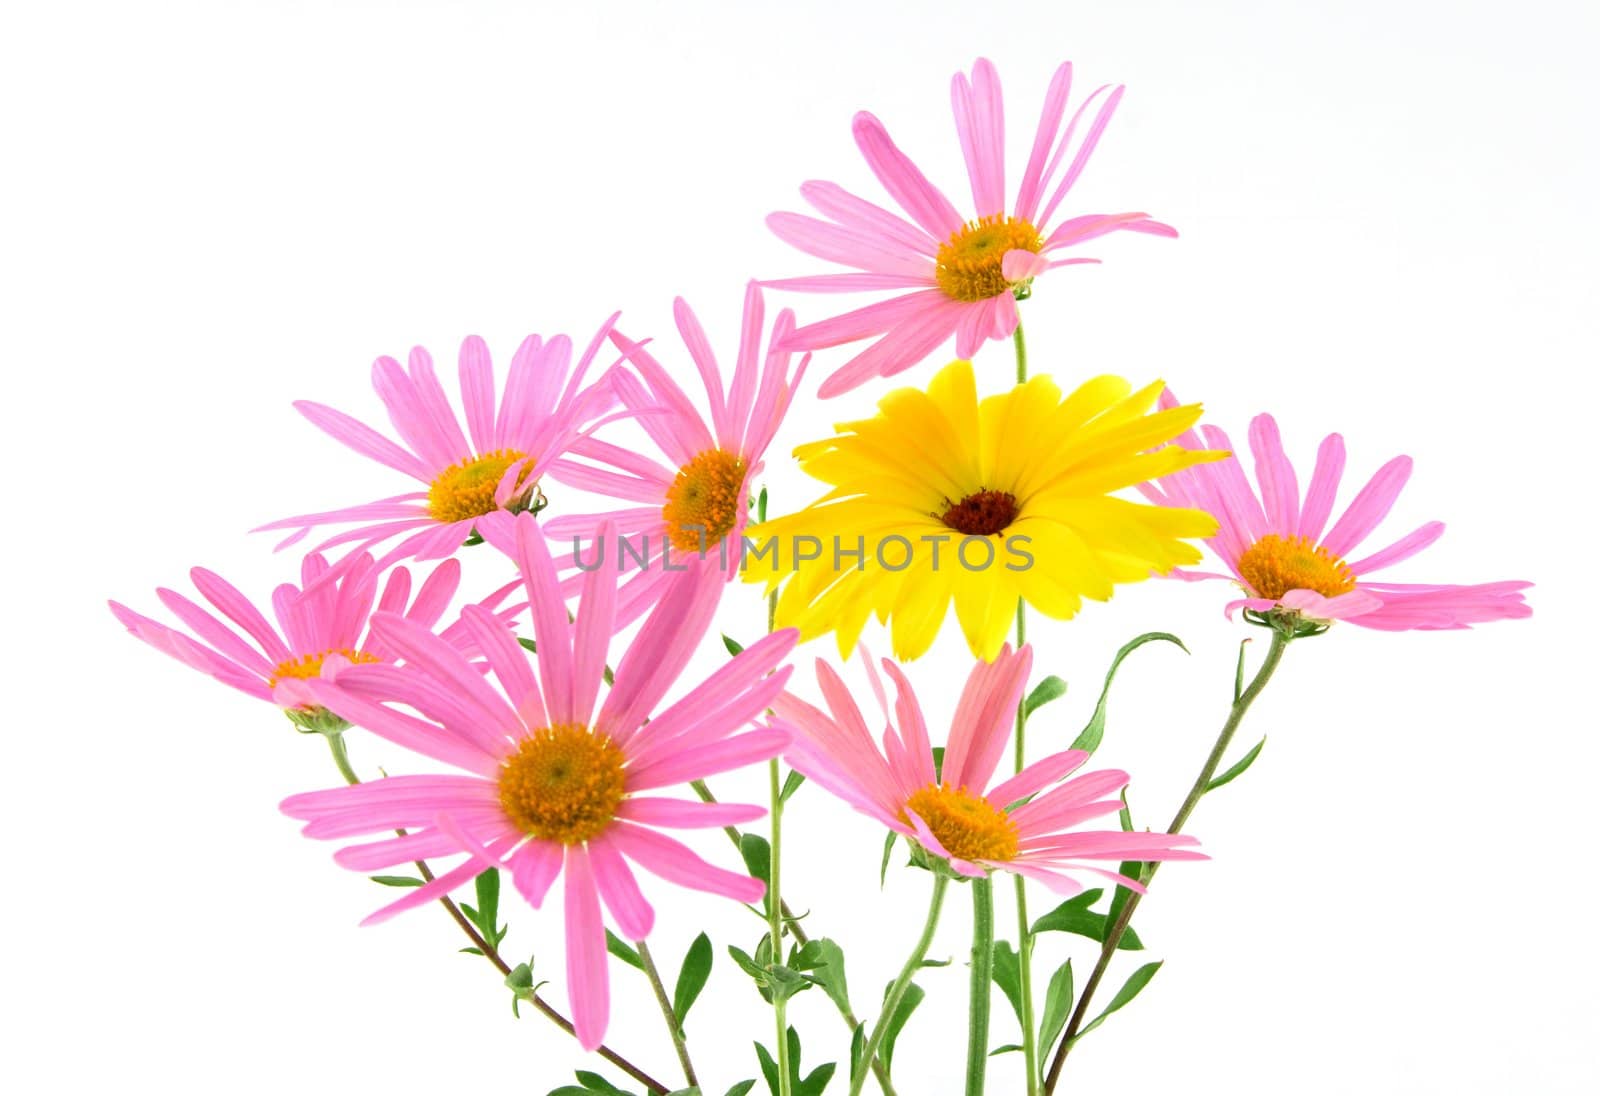 Beautiful pink and yellow flowers by anikasalsera